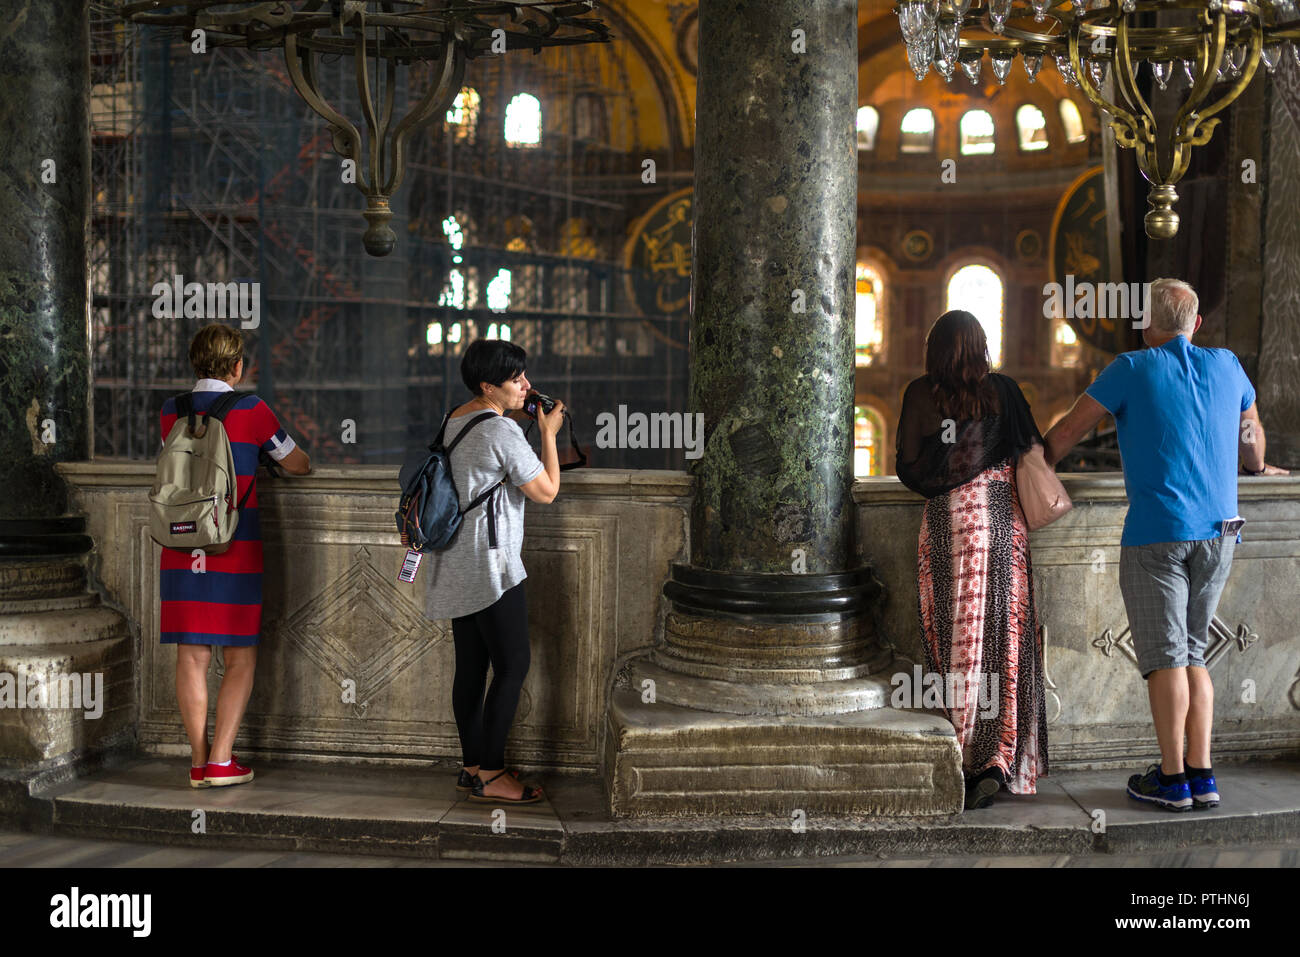 Les touristes sont à l'une des grandes 1er étage d'un balcon à admirer la vue de la nef principale du musée Sainte-Sophie, Istanbul, Turquie Banque D'Images